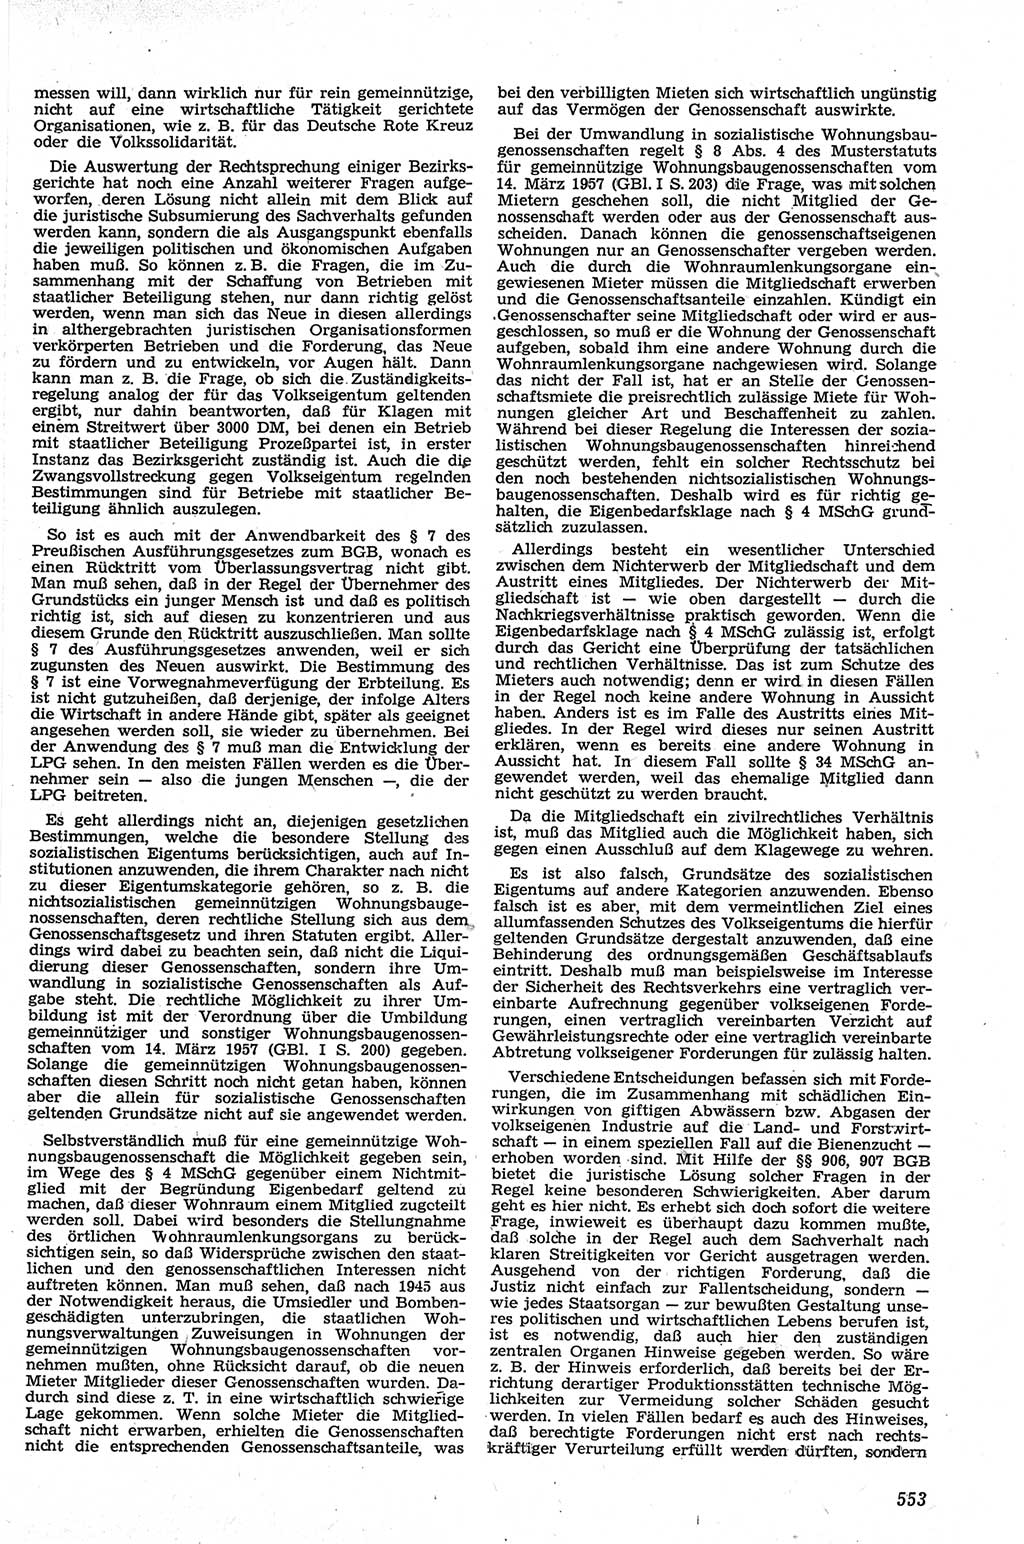 Neue Justiz (NJ), Zeitschrift für Recht und Rechtswissenschaft [Deutsche Demokratische Republik (DDR)], 13. Jahrgang 1959, Seite 553 (NJ DDR 1959, S. 553)